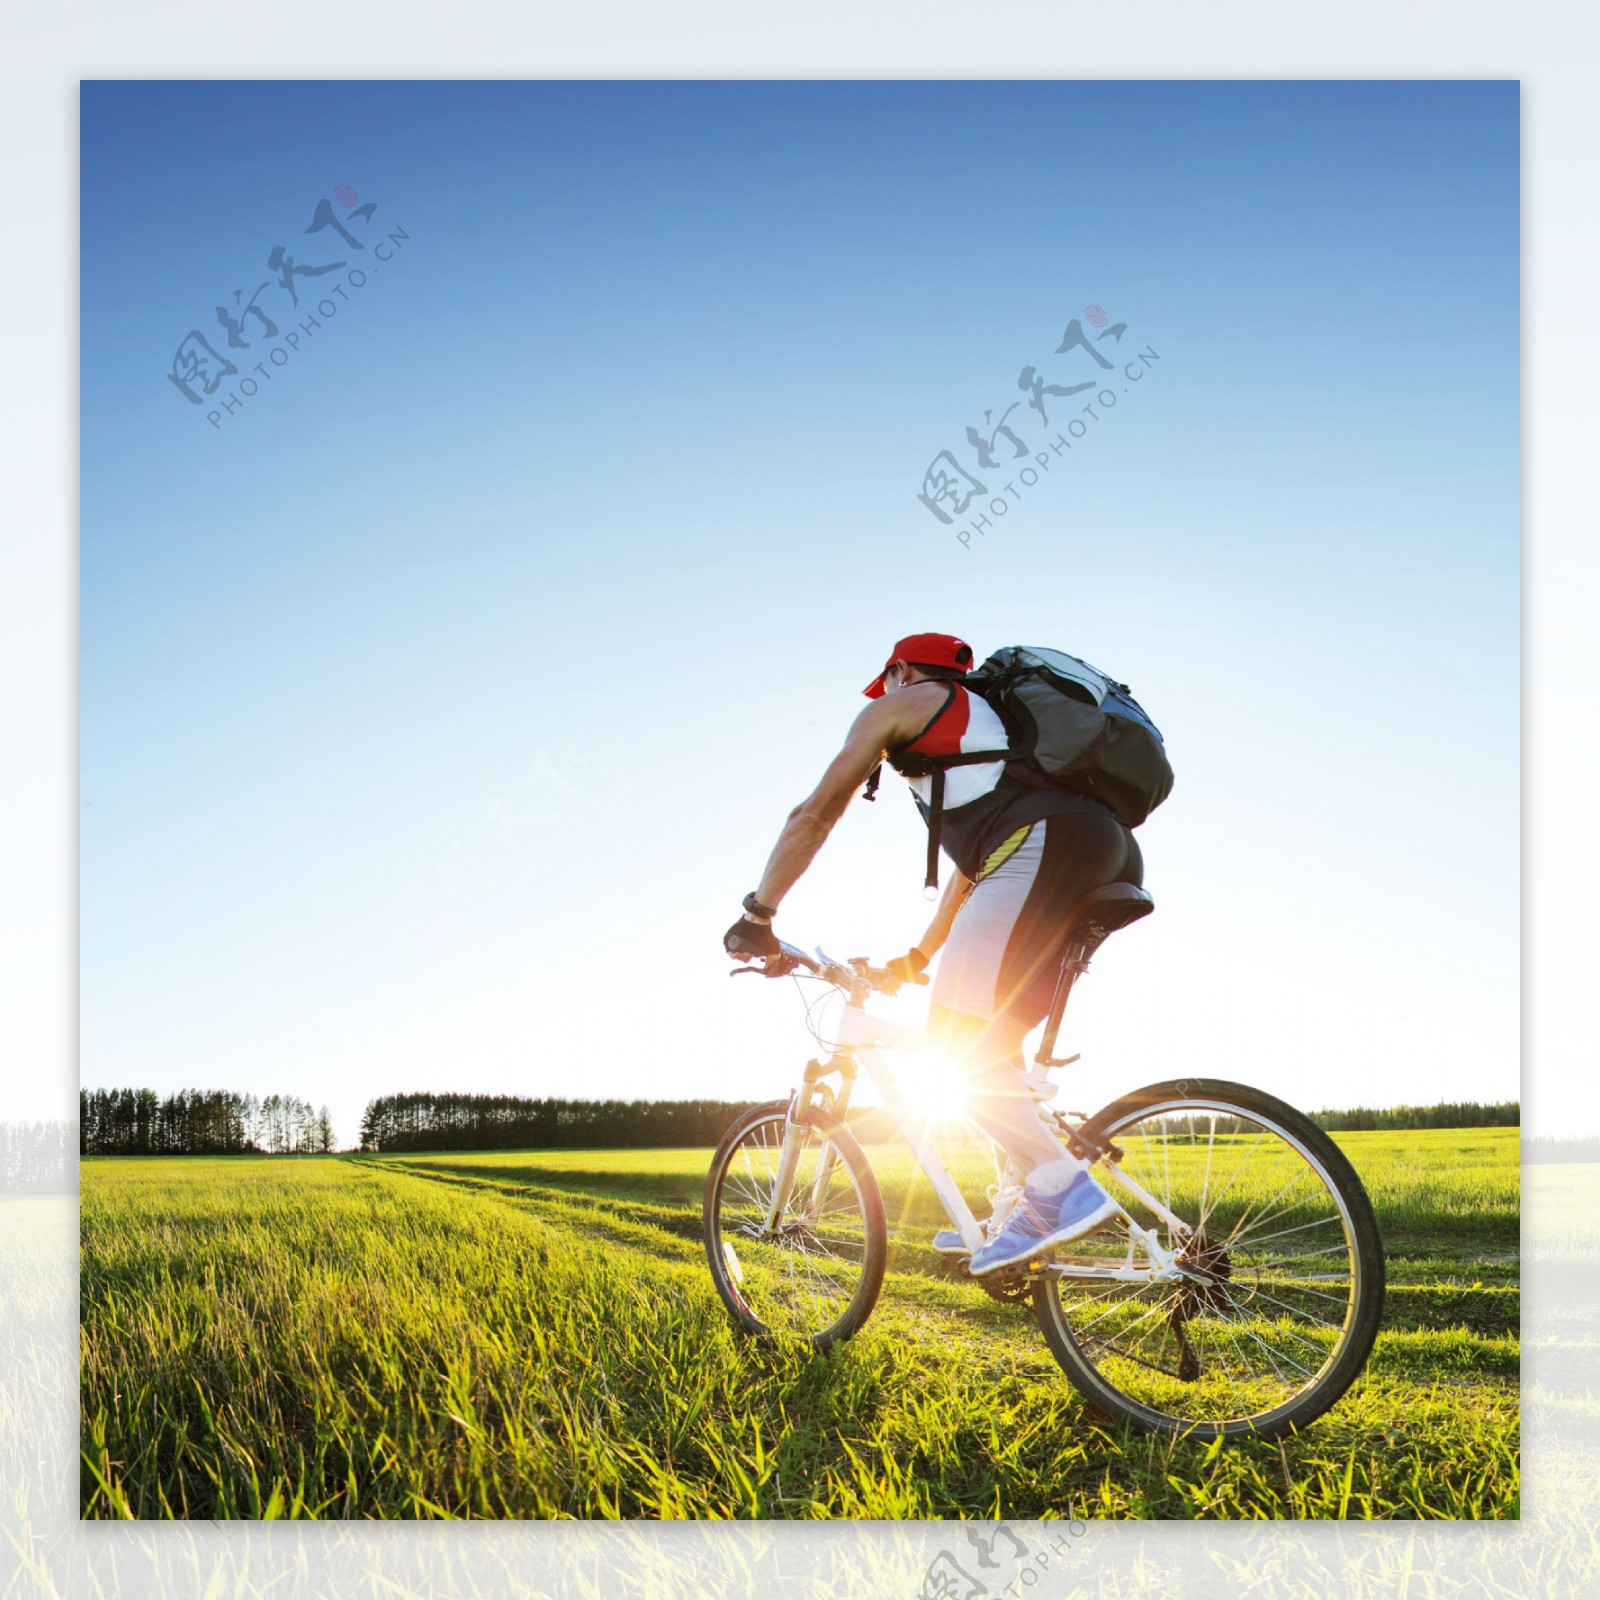 我有一个梦想——骑着单车 和你一起环游世界 - 骑行 - 骑行家 - 专业自行车全媒体